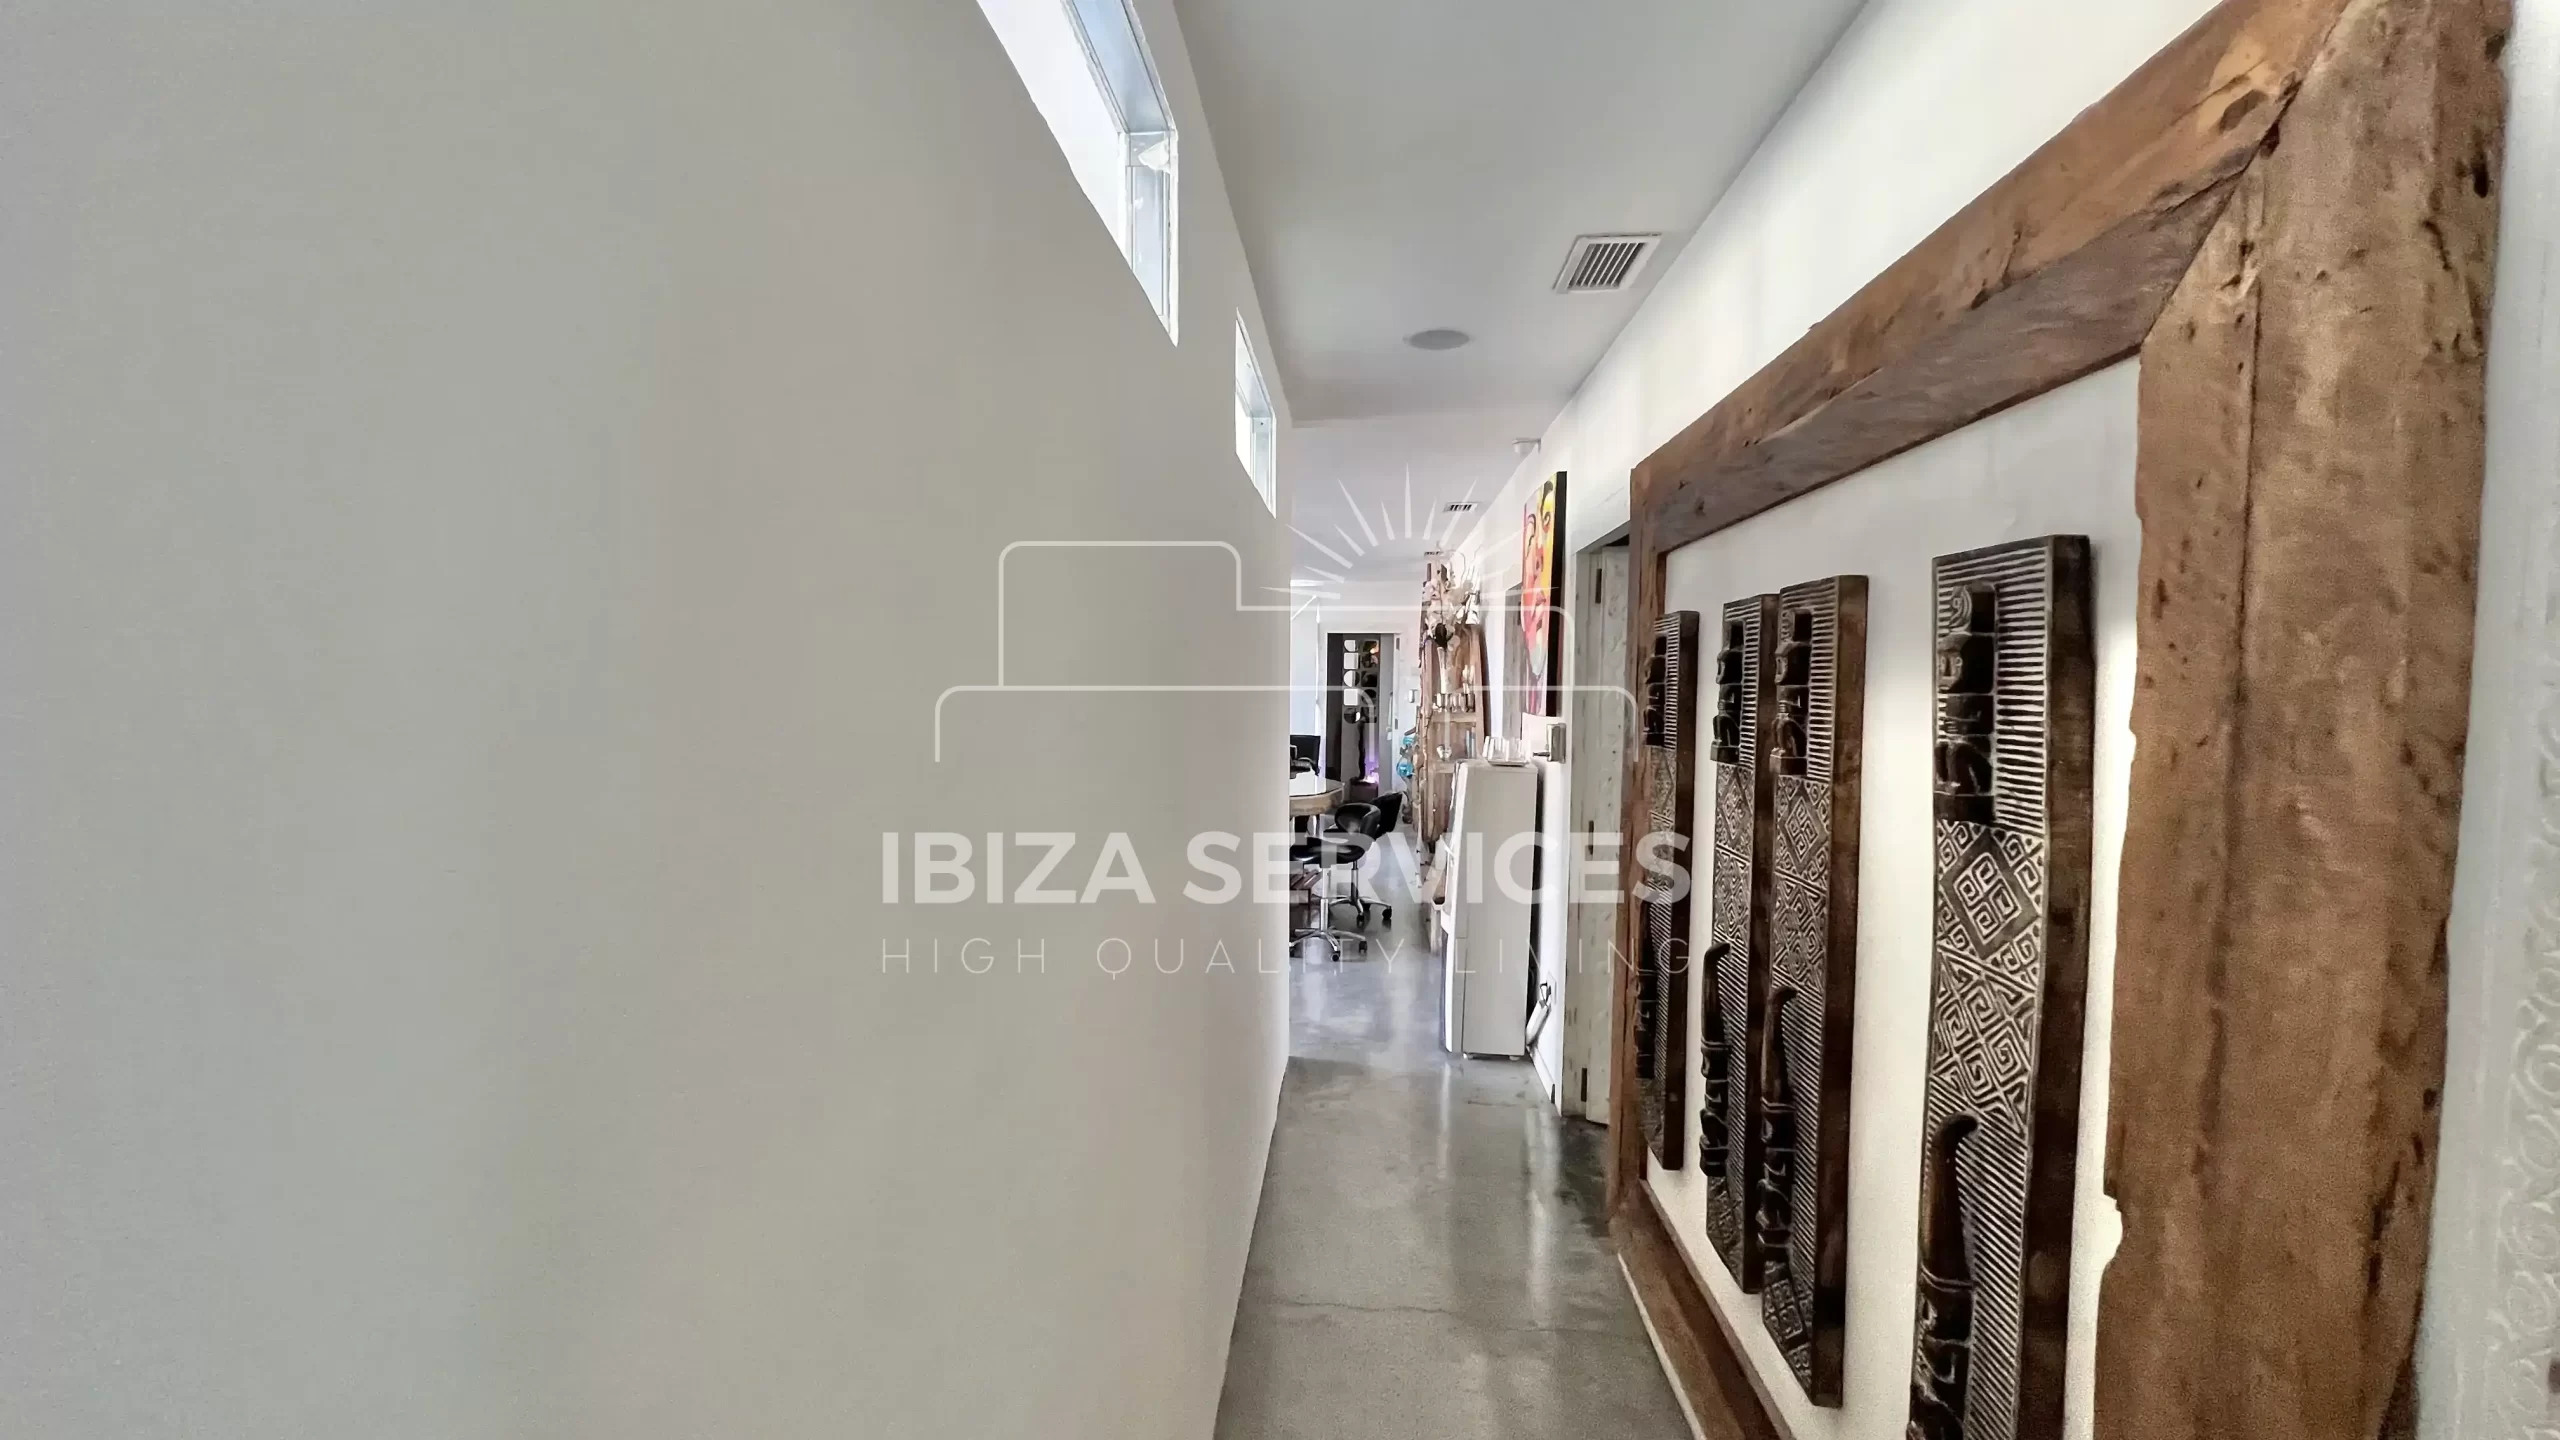 Uitzonderlijke commerciële ruimte in Marina Botafoch, Ibiza: Een unieke investeringskans